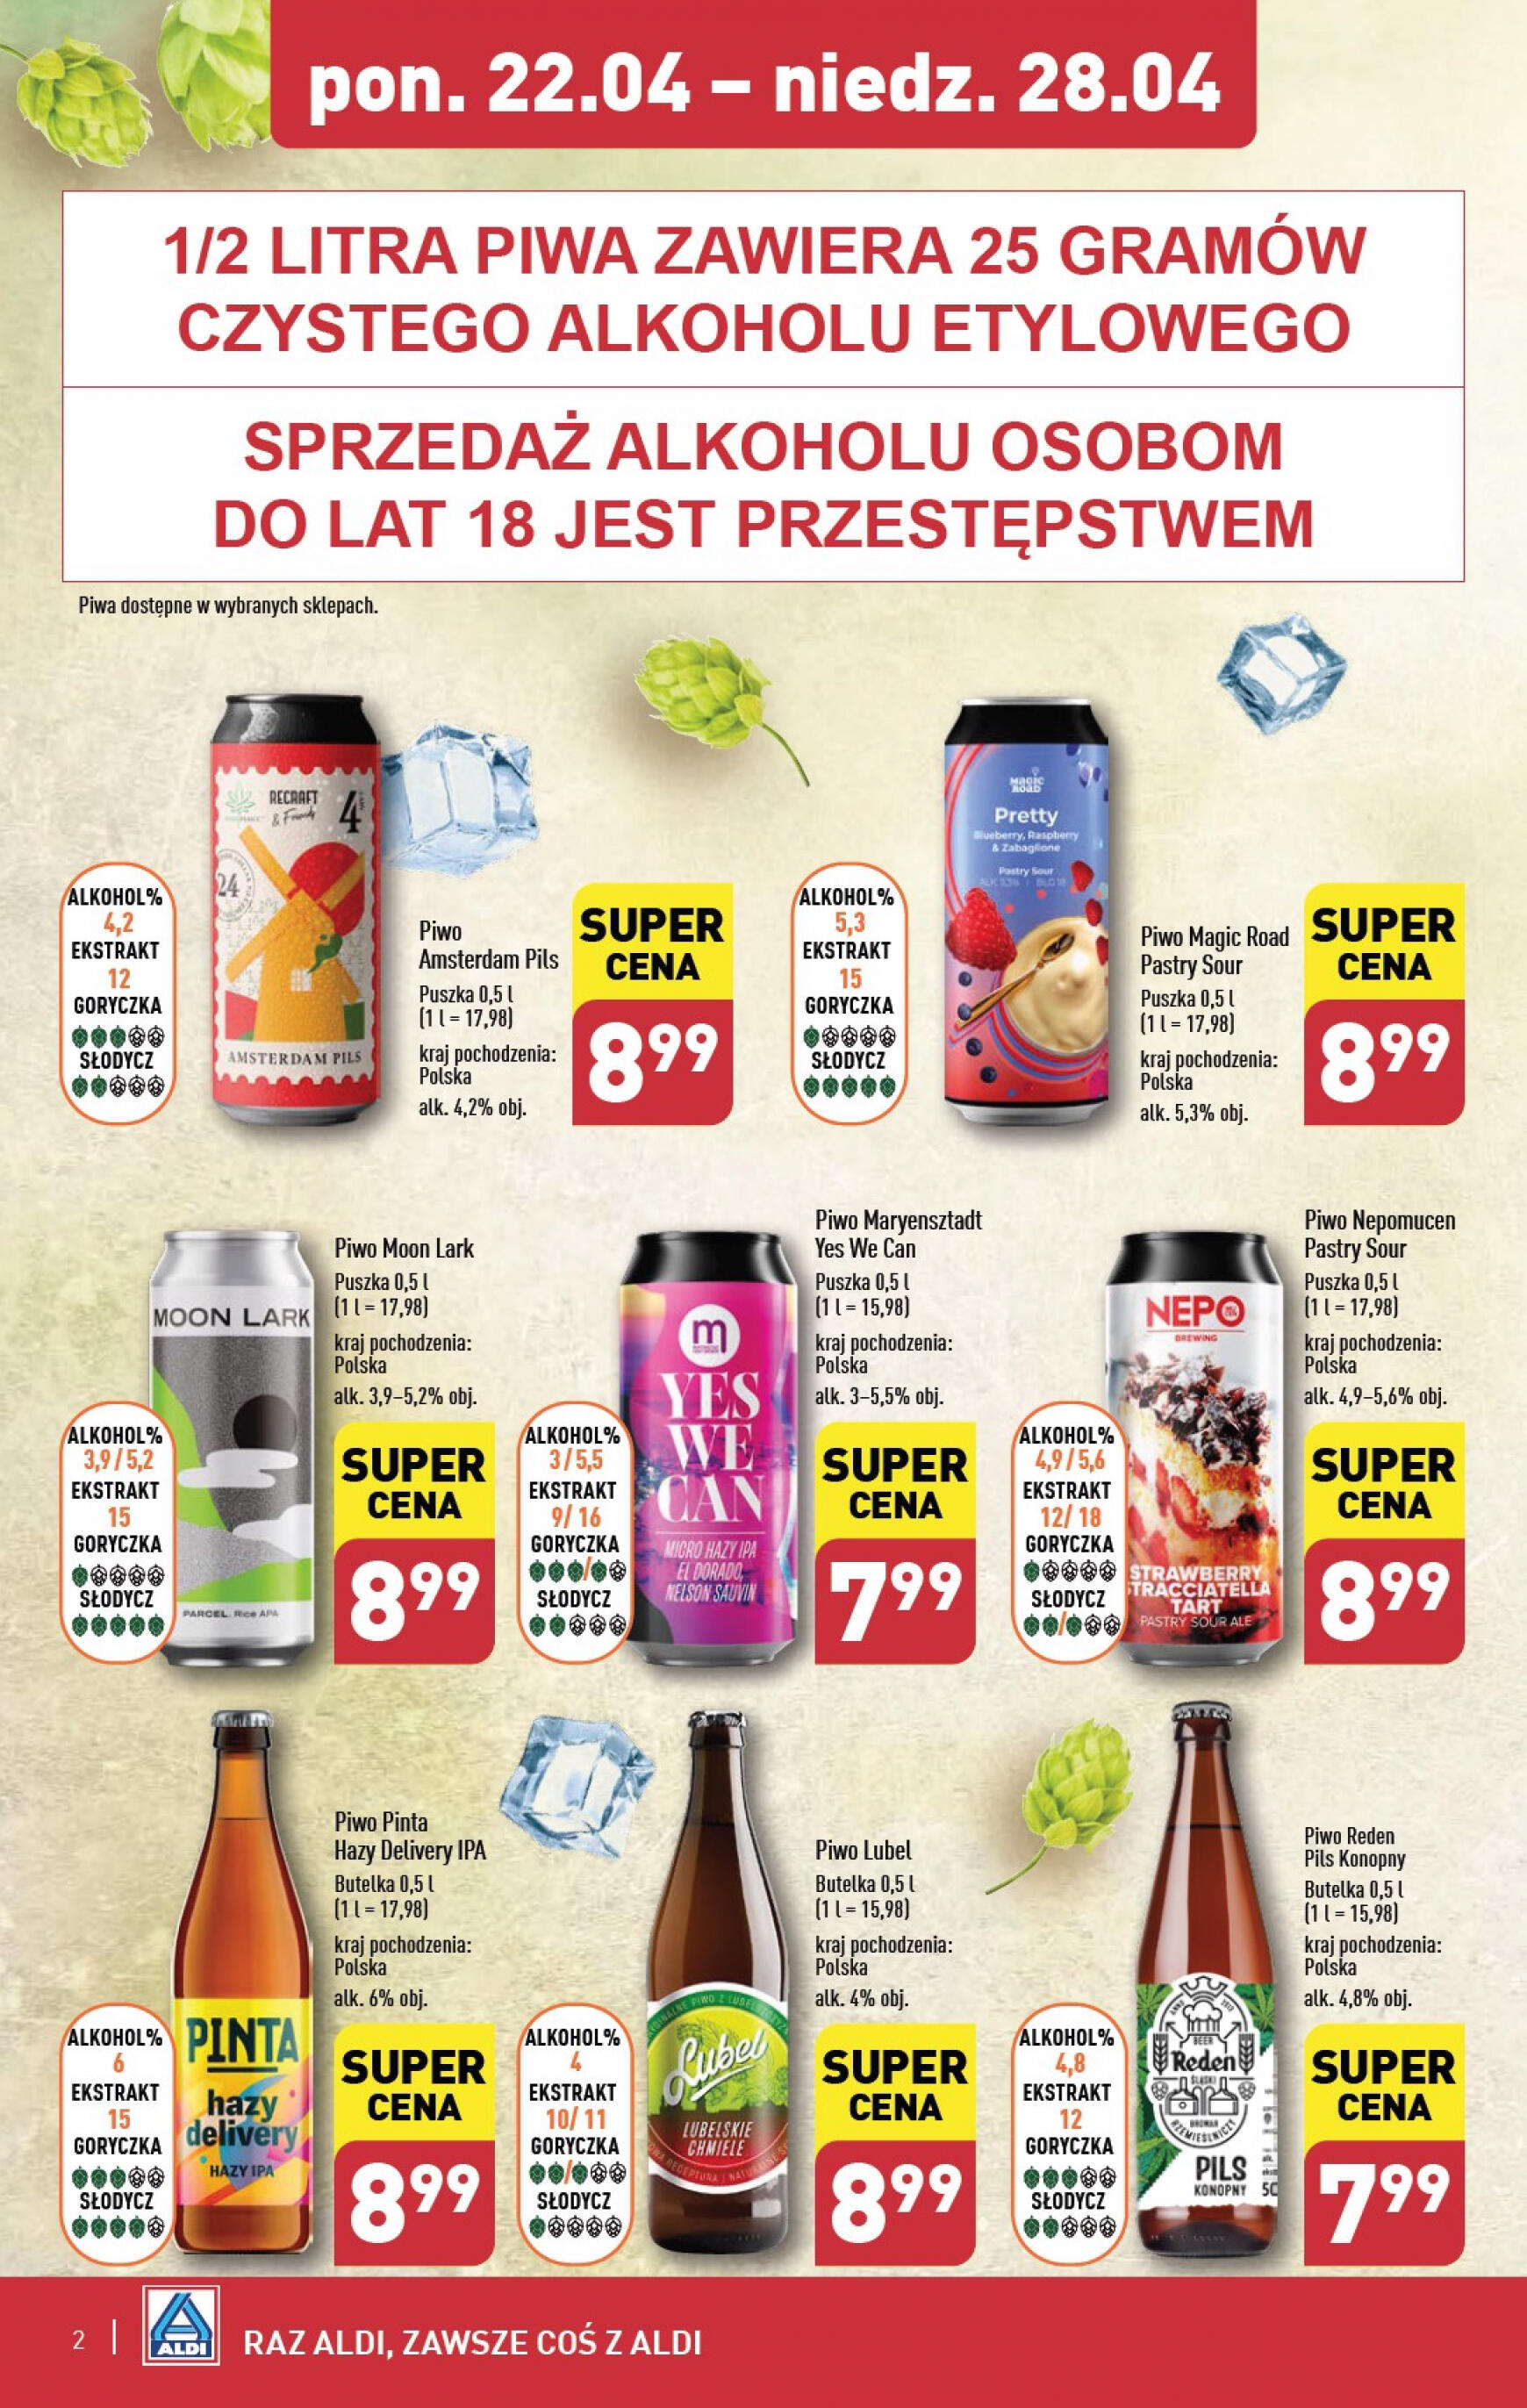 aldi - Aldi - Festiwal piwa w super cenach gazetka aktualna ważna od 22.04. - 28.04. - page: 2